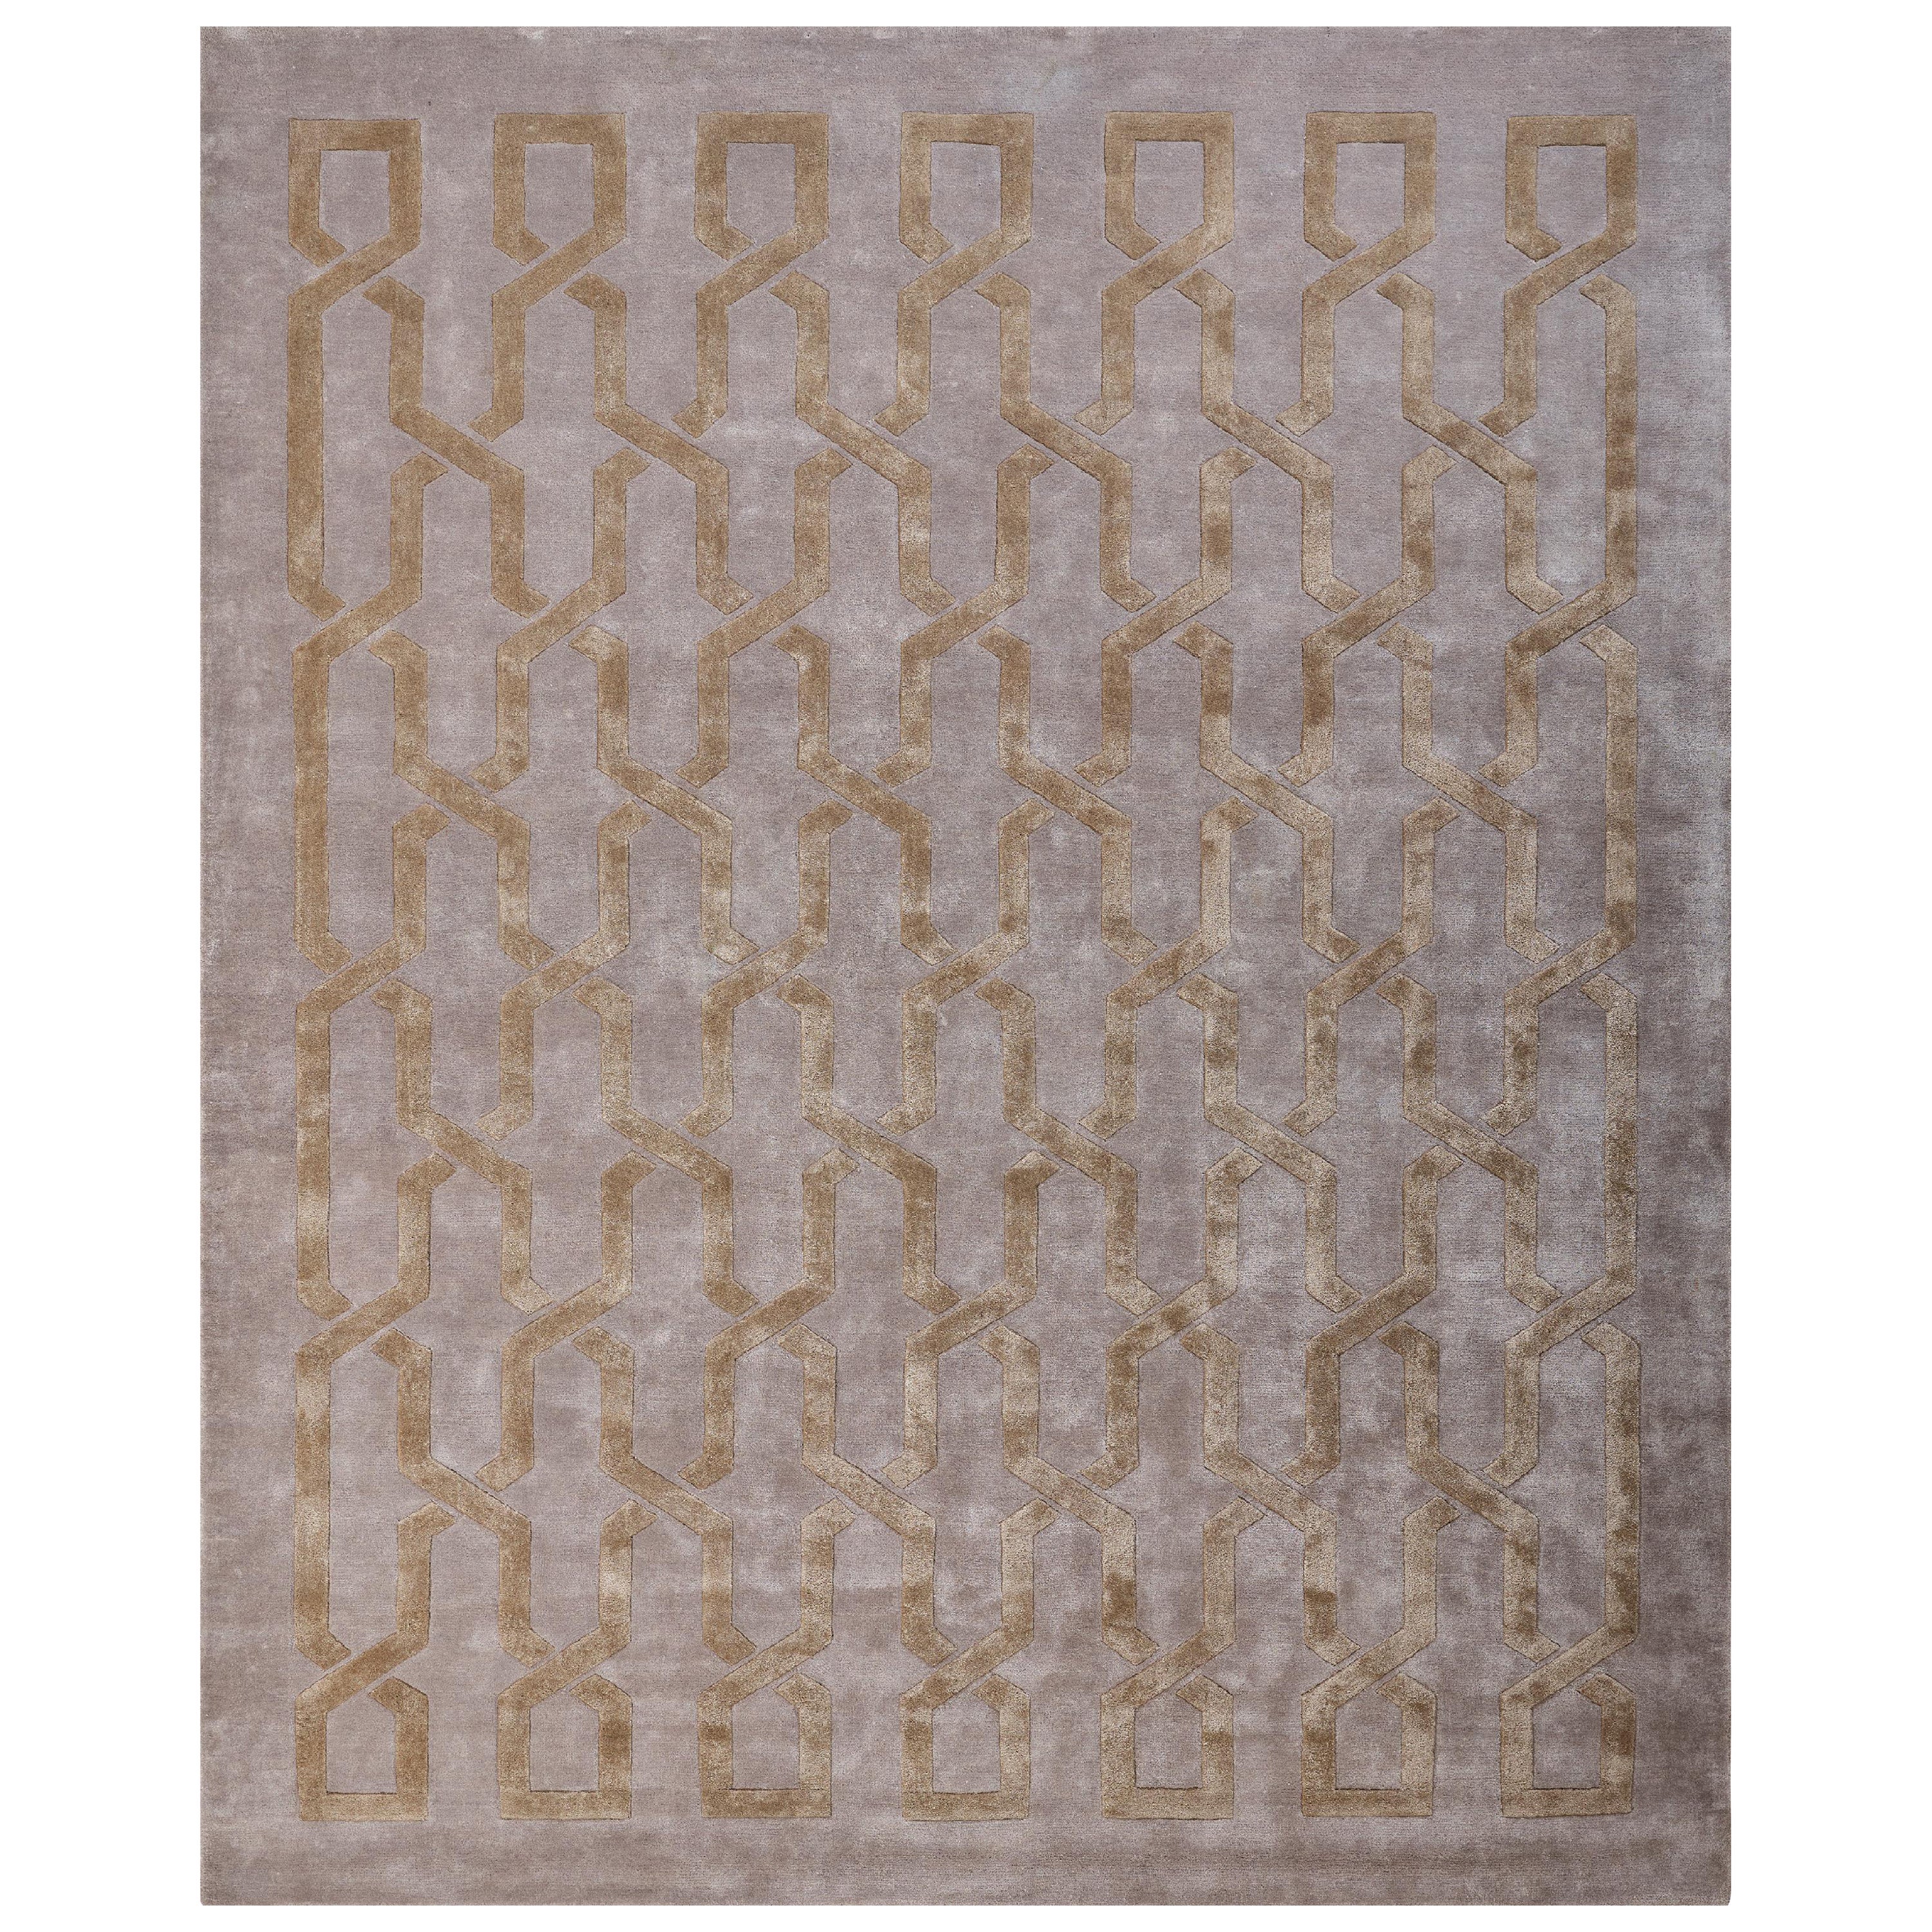 VERTEX - Tapis en soie géométrique moderne touffeté à la main, couleur or, fait main